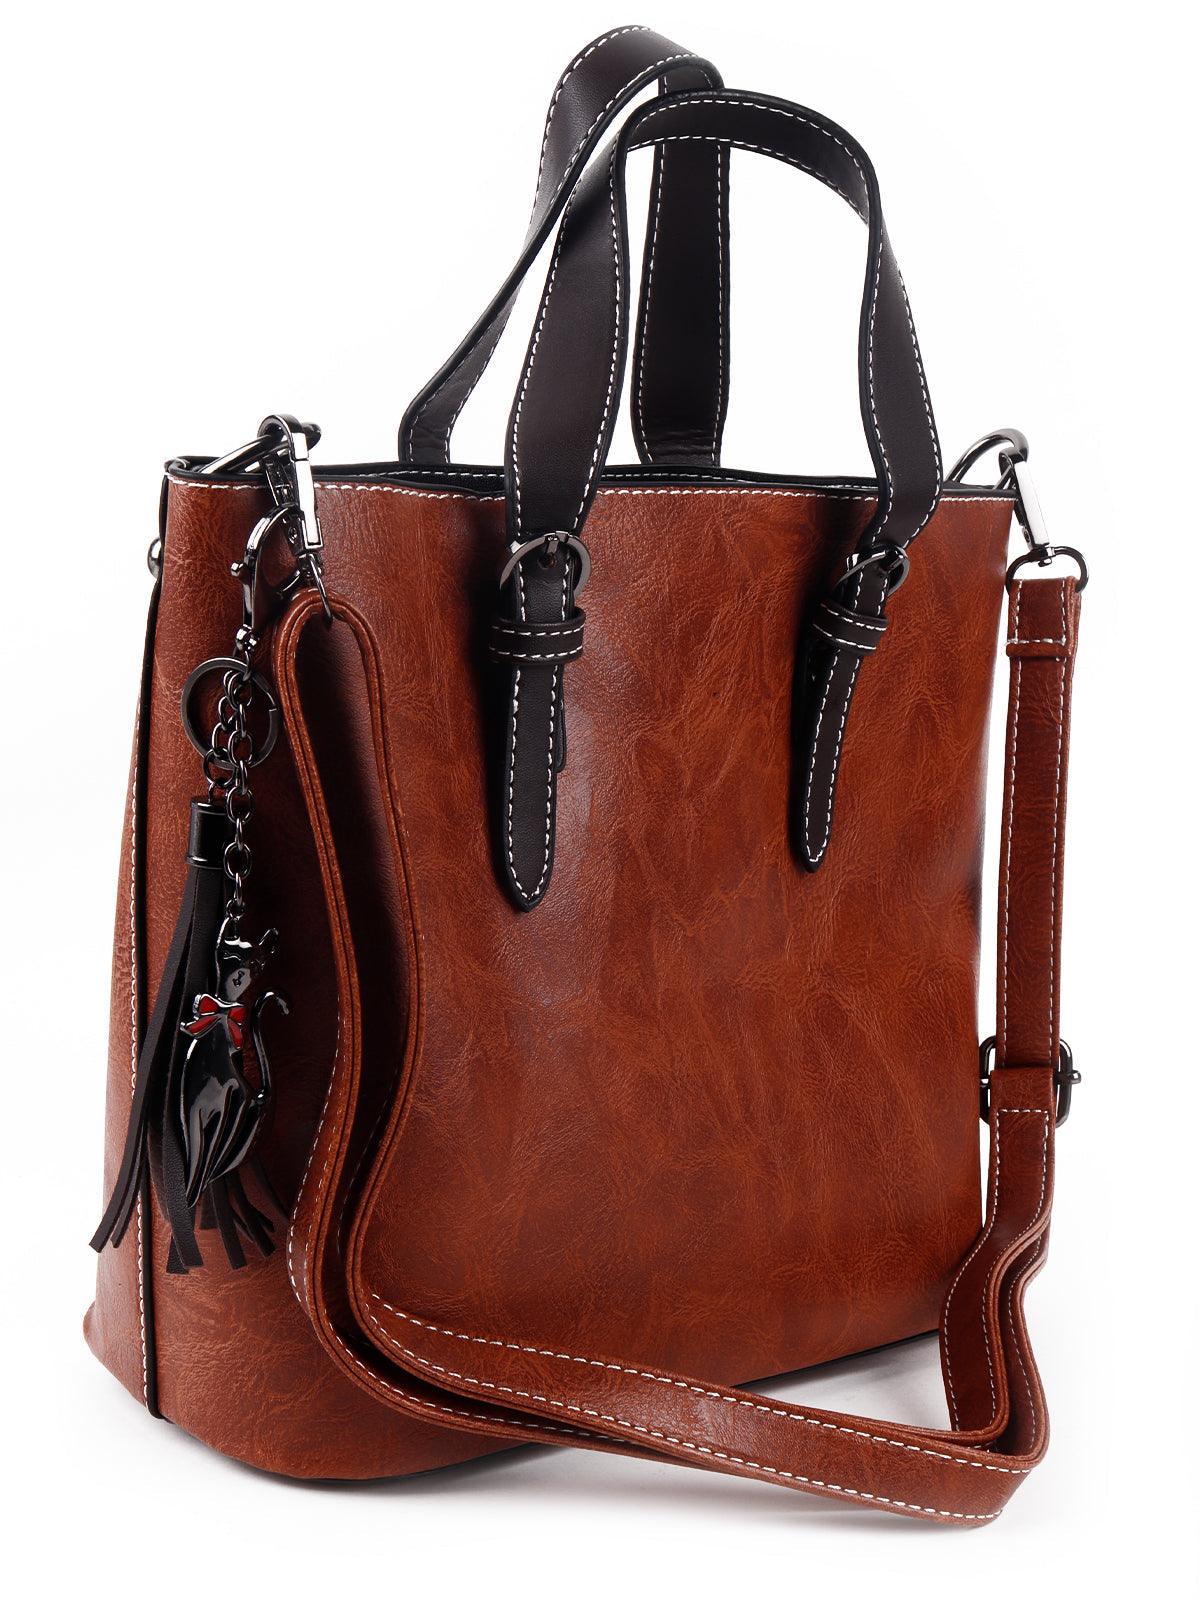 Gorgeous brown textured handbag - Odette